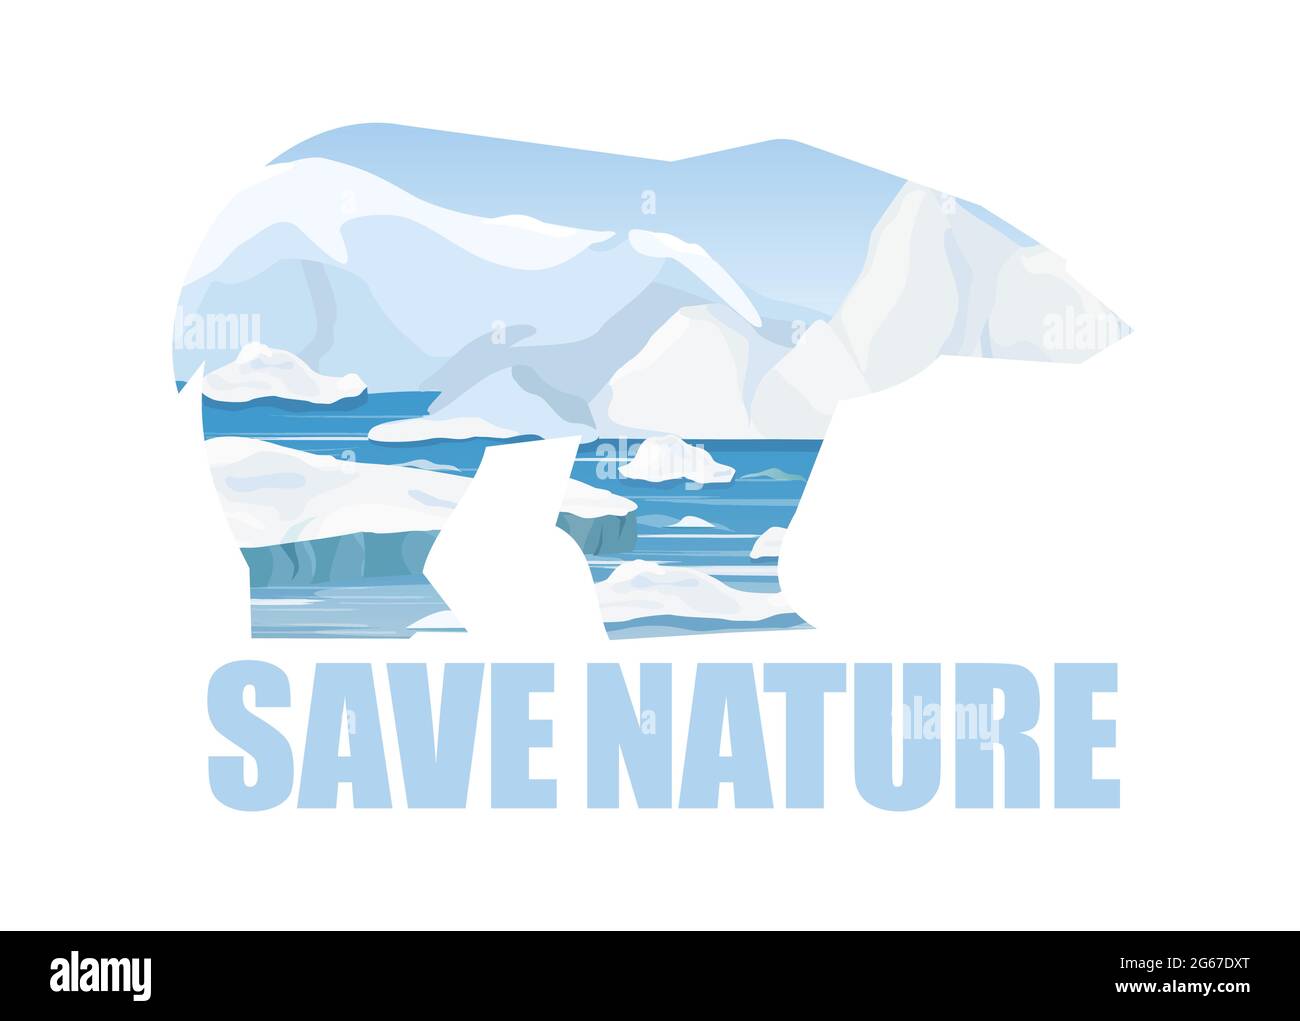 Illustrazione vettoriale concetto di salvataggio della natura di Arctick. Silhouette dell'orso artico e sfondo del paesaggio artico con testo Save Nature. Stile piatto cartoon Illustrazione Vettoriale